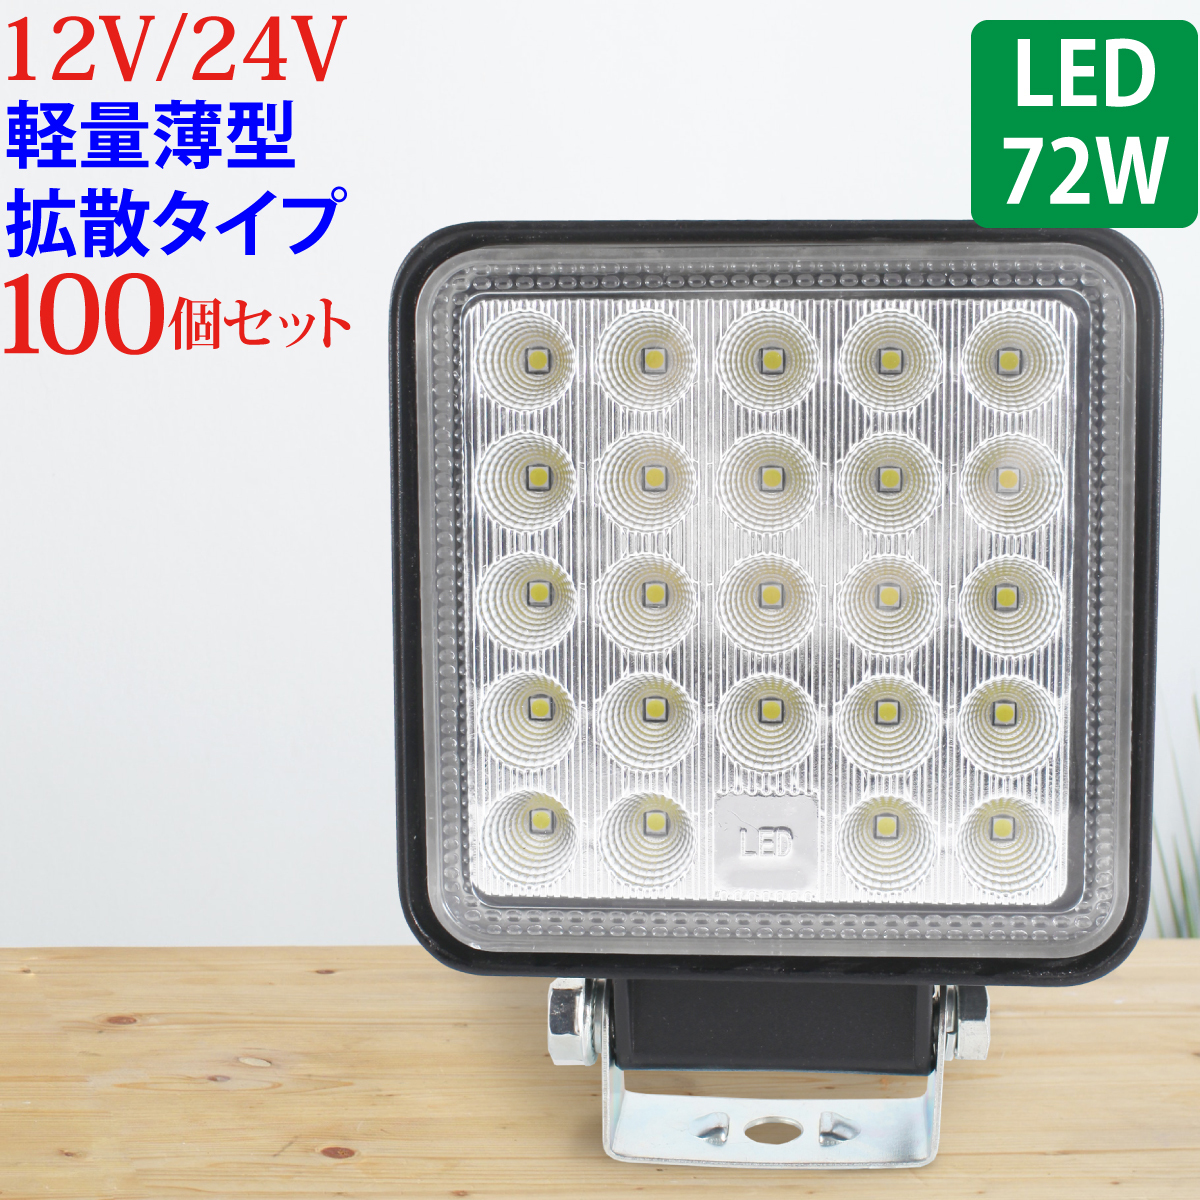 100個セット 作業灯 LED 72W 広範囲に明るい拡散タイプ 角型 12V/24V 2640LM ホワイト 広角 IP65 ワークライト 防水 フォークリフト